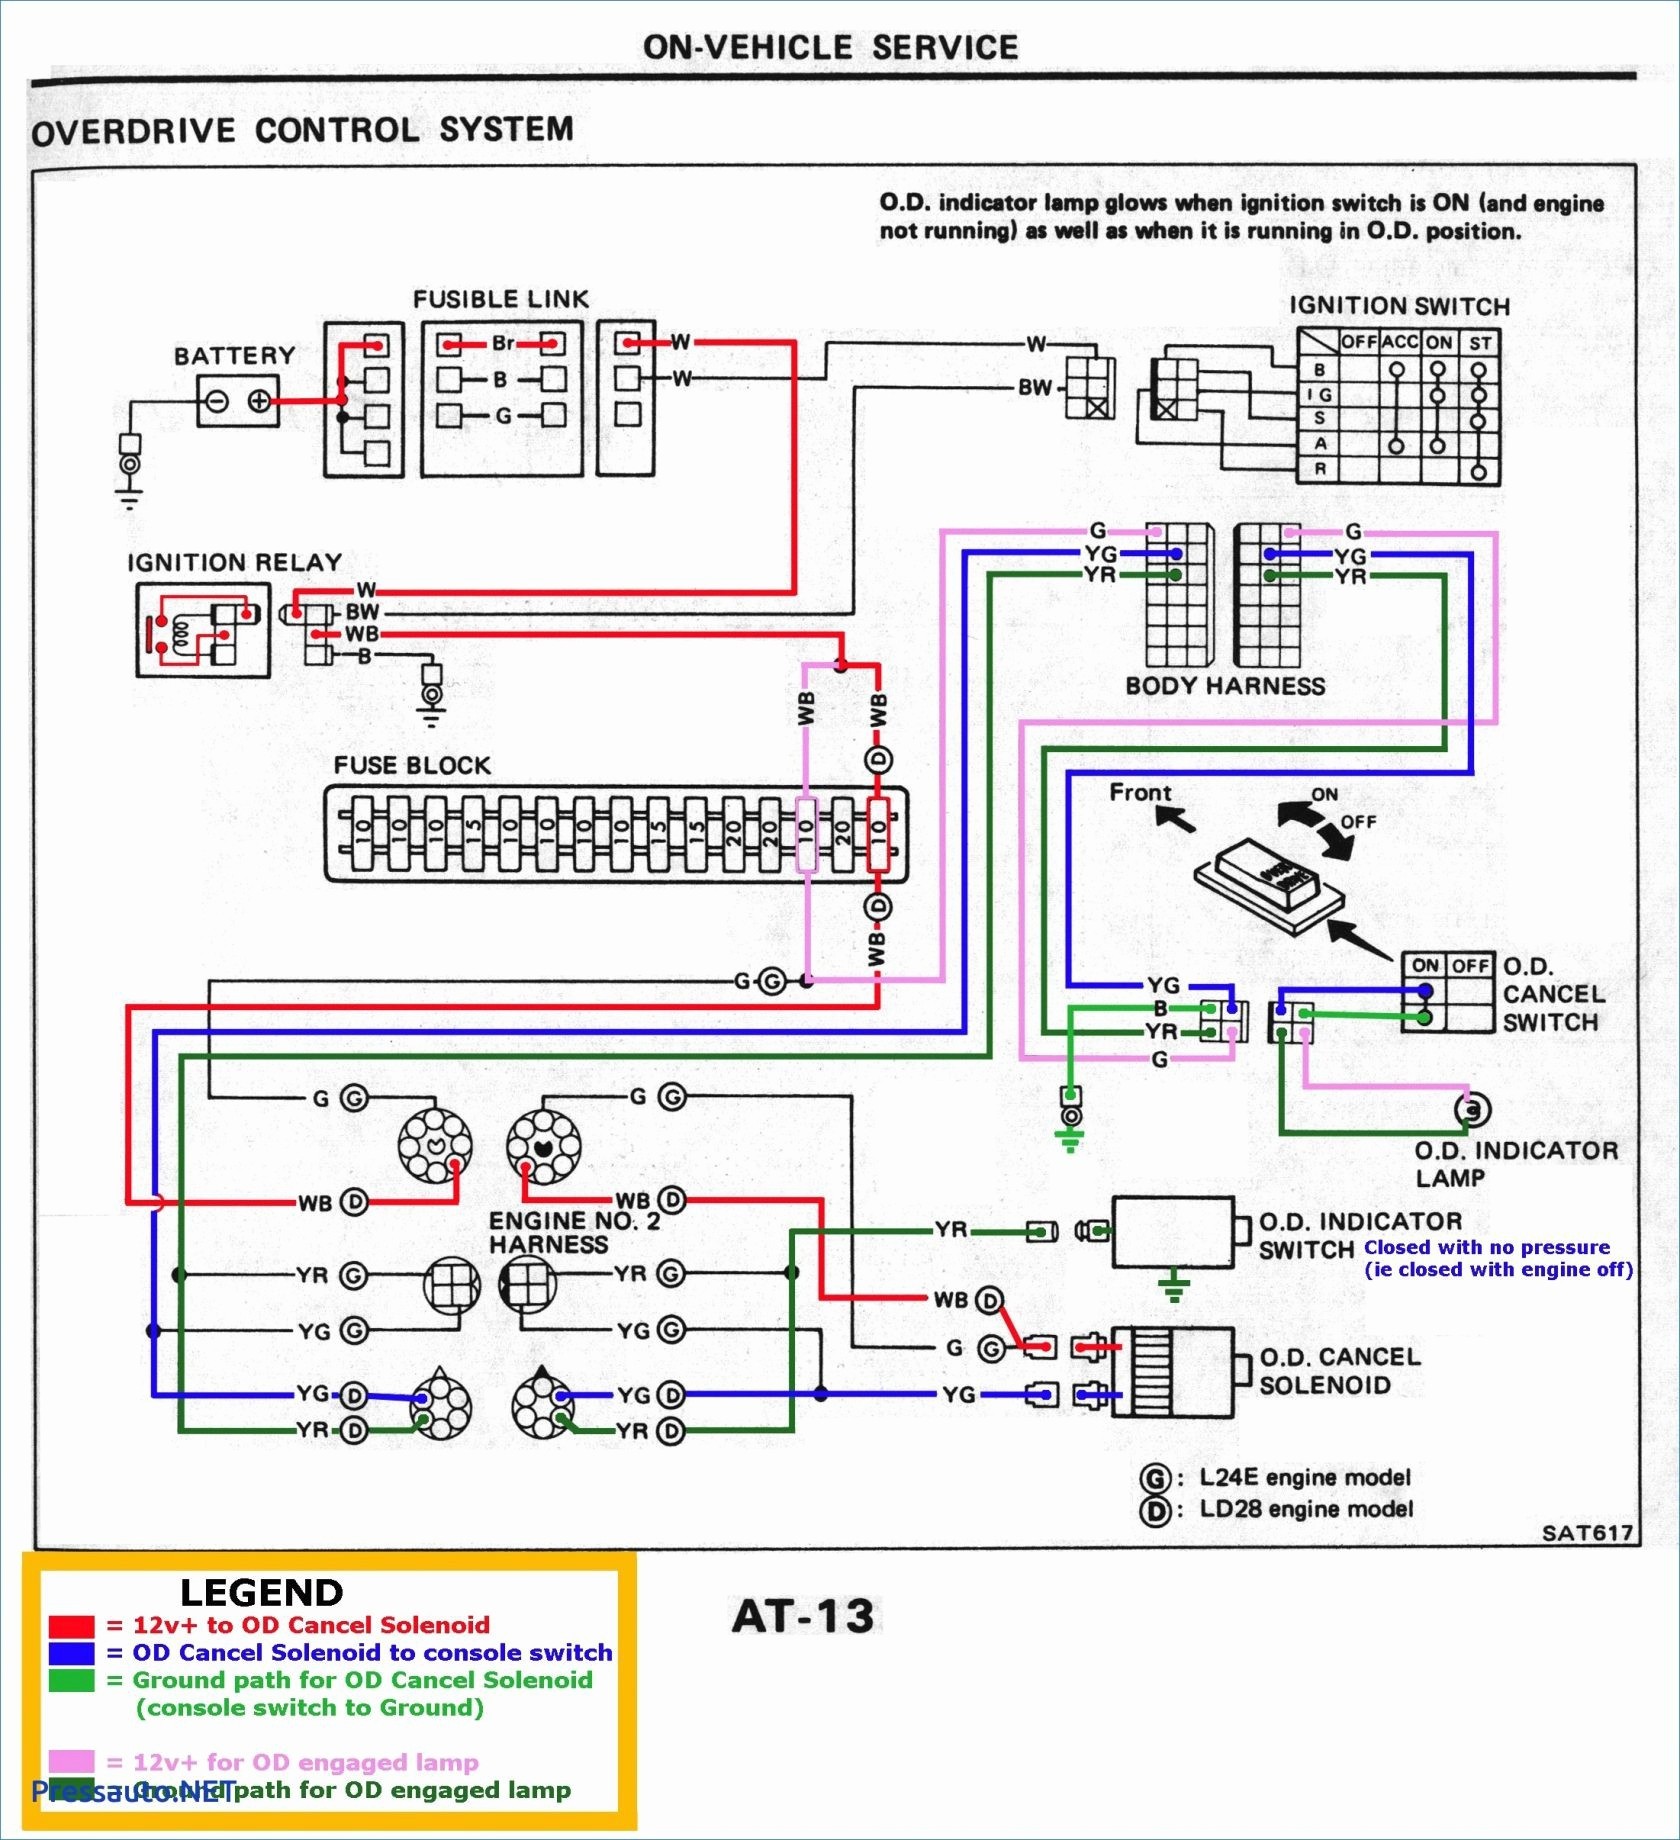 Wiring Diagram for Yardman Riding Mower Refrence Wiring Diagram Yard Machine 42 Inch Riding Mower